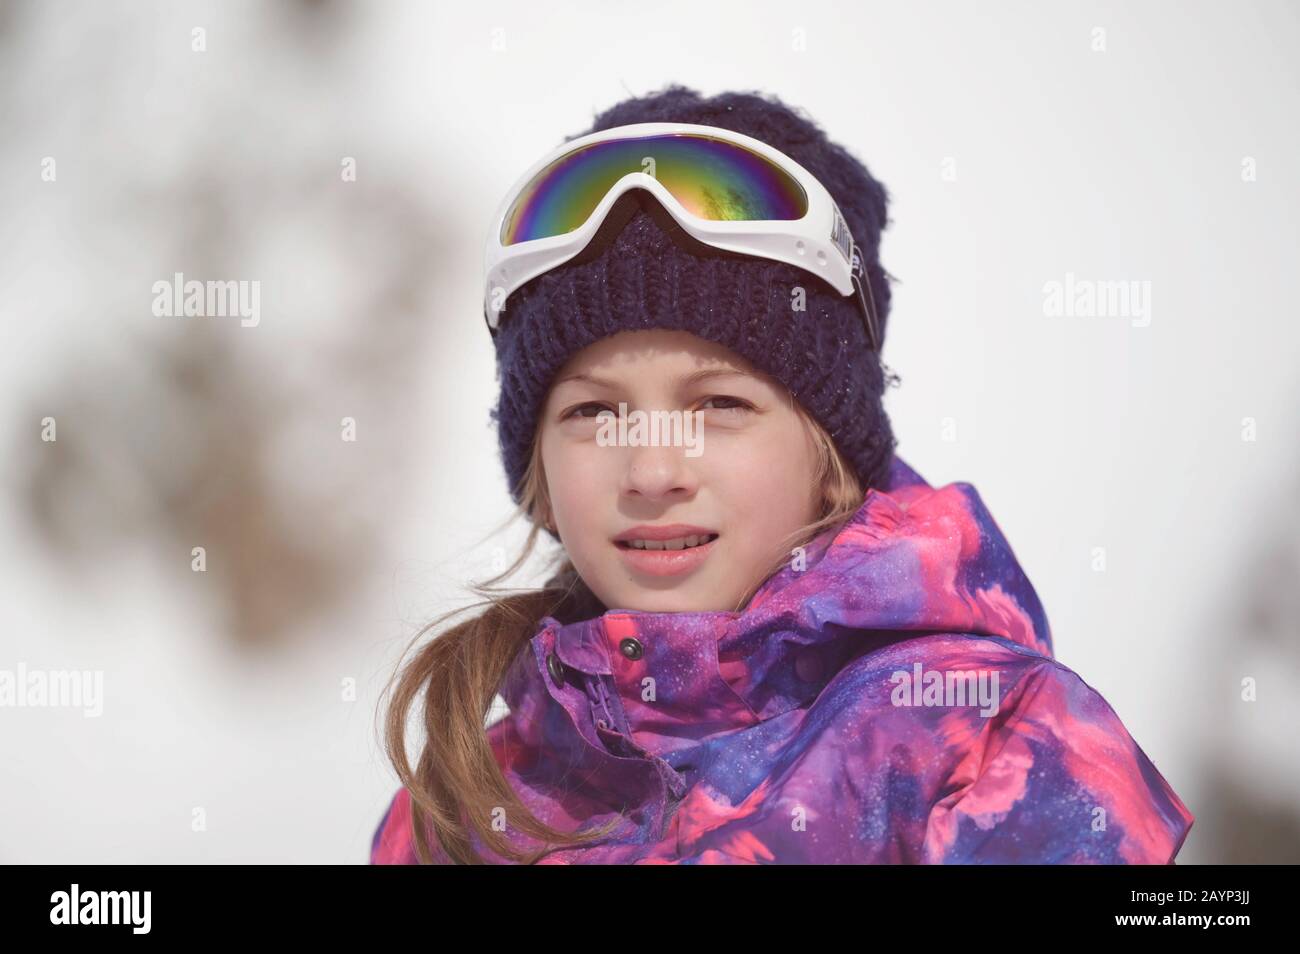 Schöne aktive lächelnde fröhliche kleine kaukasische junge Frau in Wollmütze und Snowboardjacke mit Ski-Googles im Winter Outdoor-Freizeit-Nachbildung Stockfoto